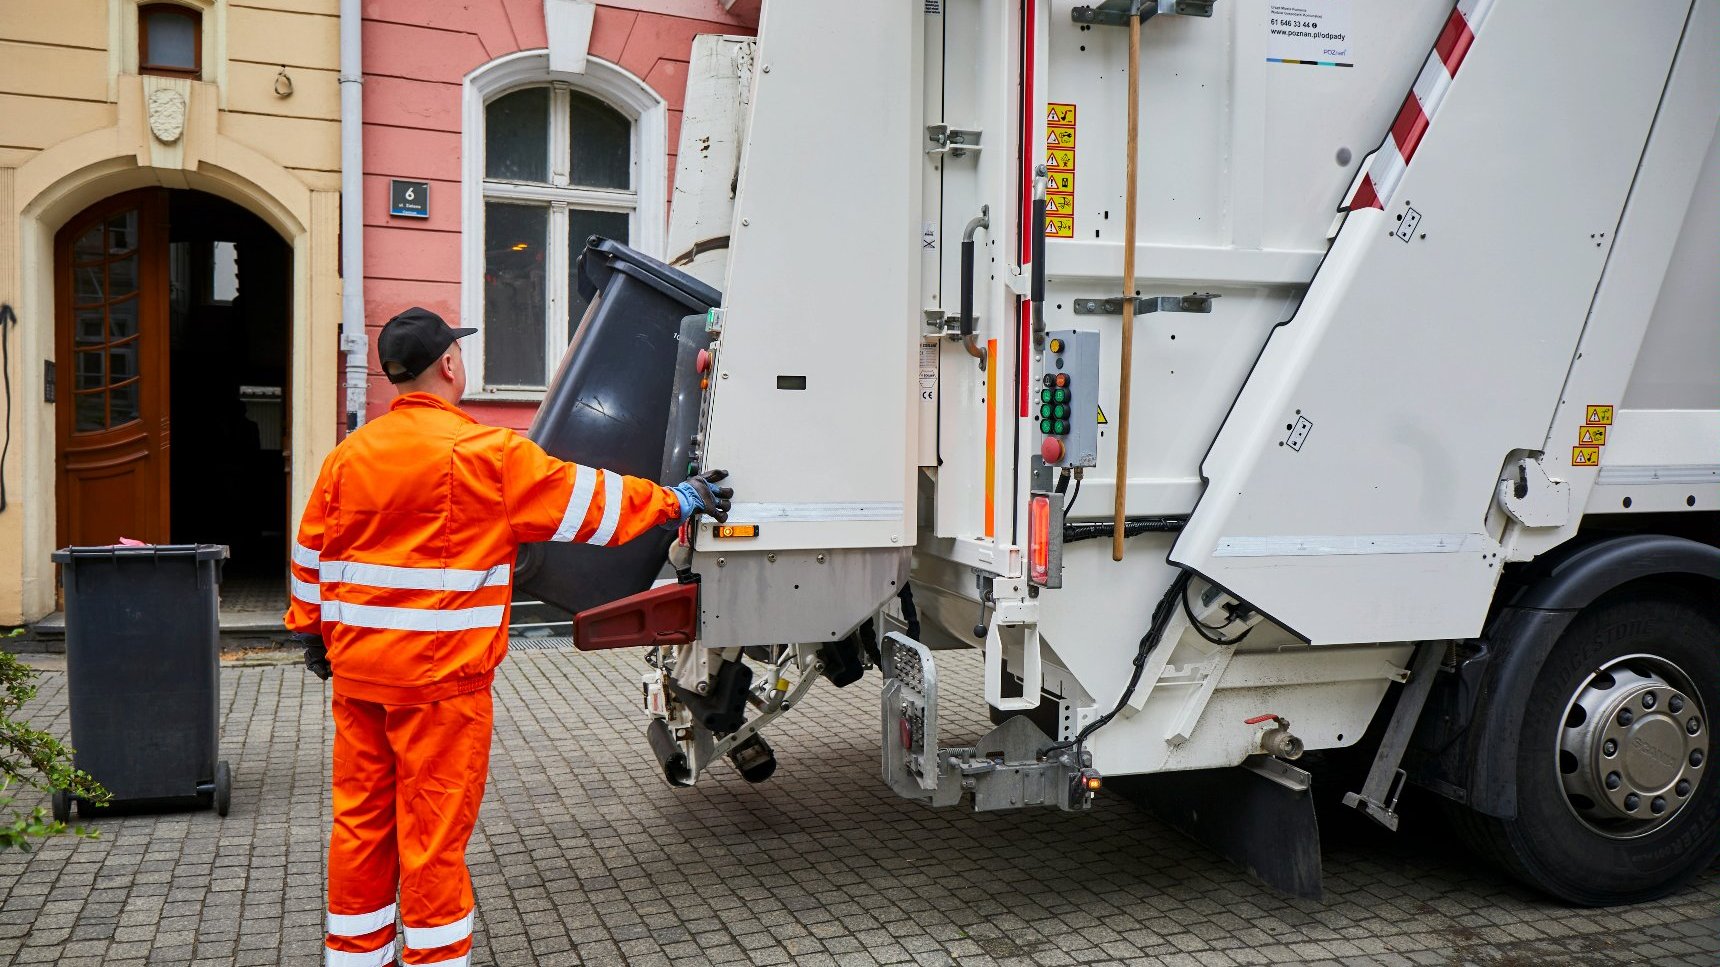 Moment odbioru odpadów komunalnych: pracownika obsługującego śmieciarkę i moment opróżniania czarnego pojemnika na odpady zmieszane.